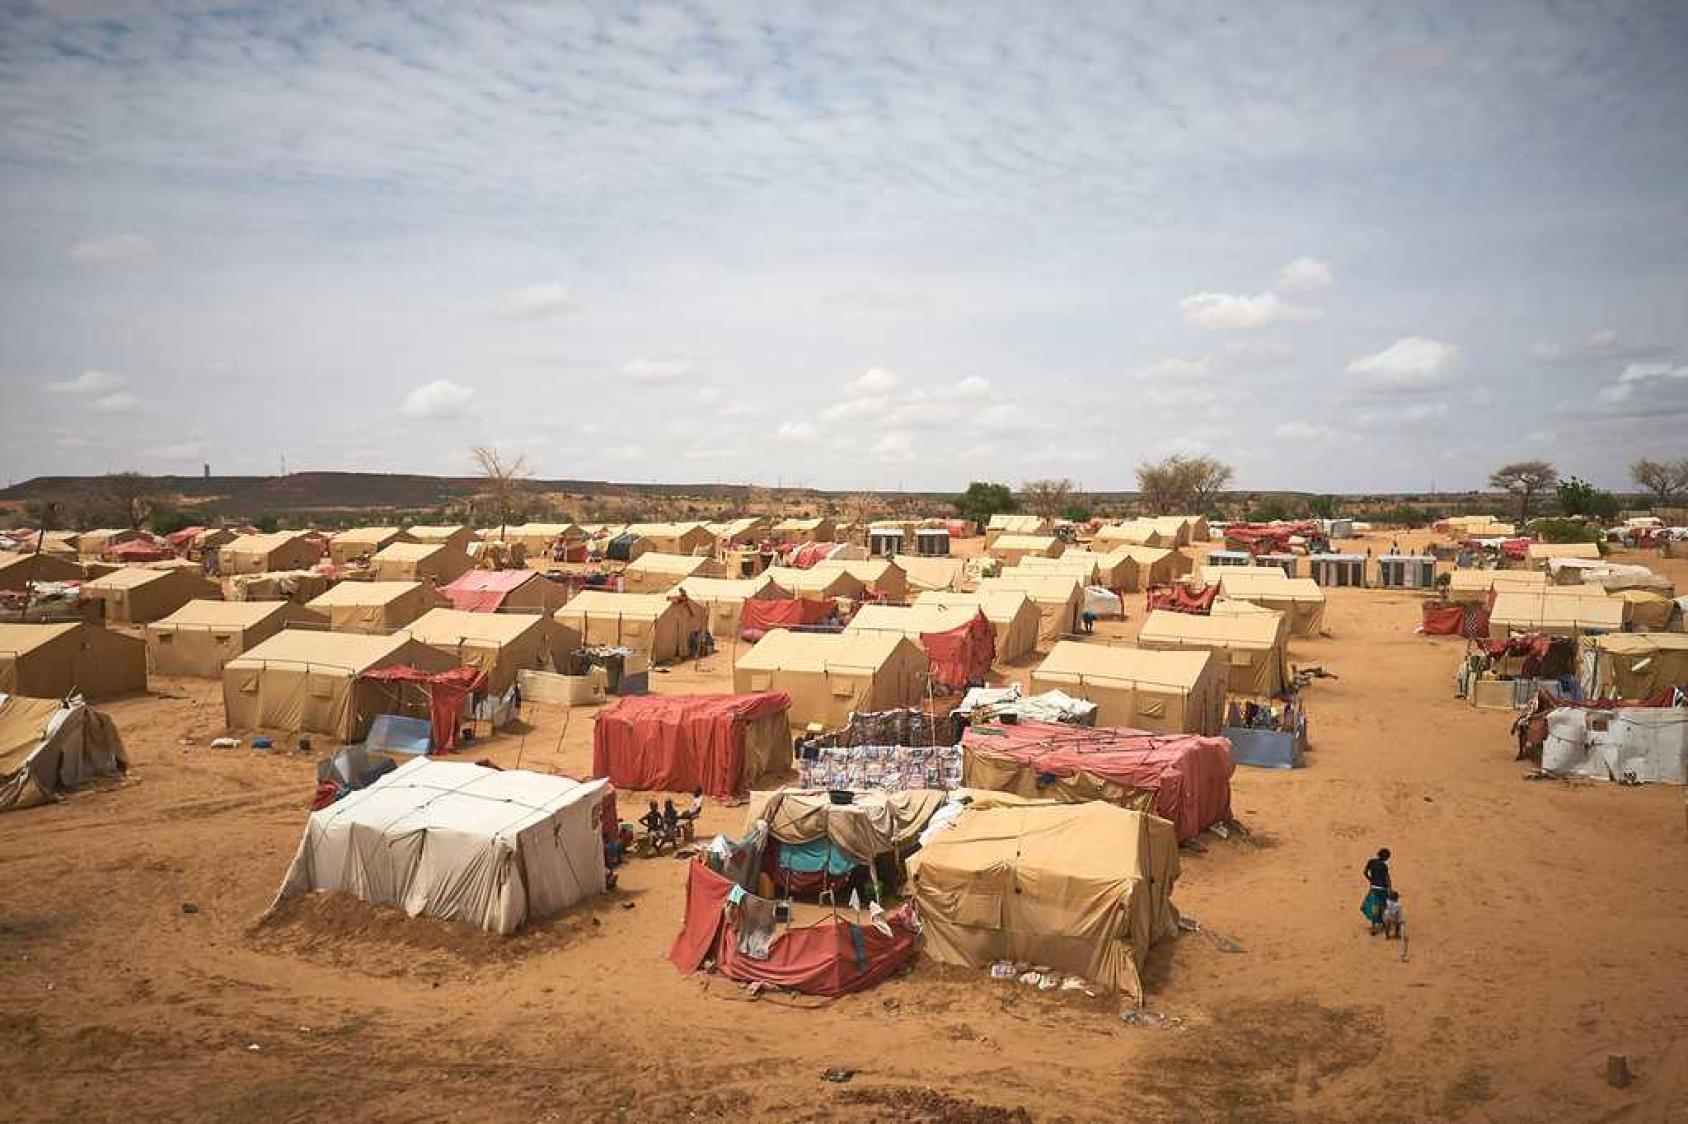 Vue d'un campement où plusieurs personnes s'affairent autour des tentes qui leurs servent d'abri, au milieu d'une étendue désertique.